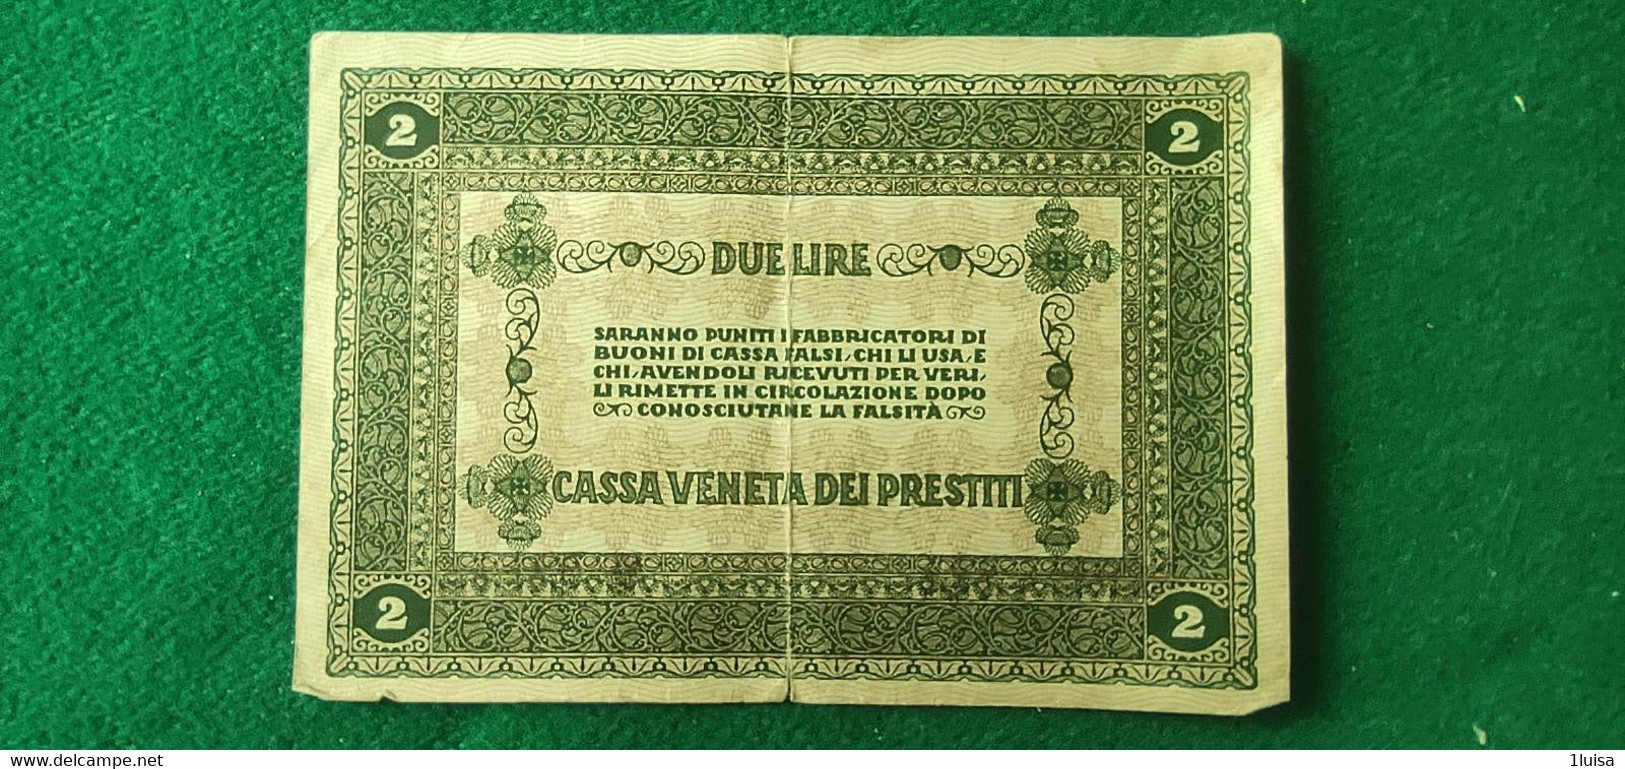 Italia Cassa Veneta 1918 2 Lire - Austrian Occupation Of Venezia